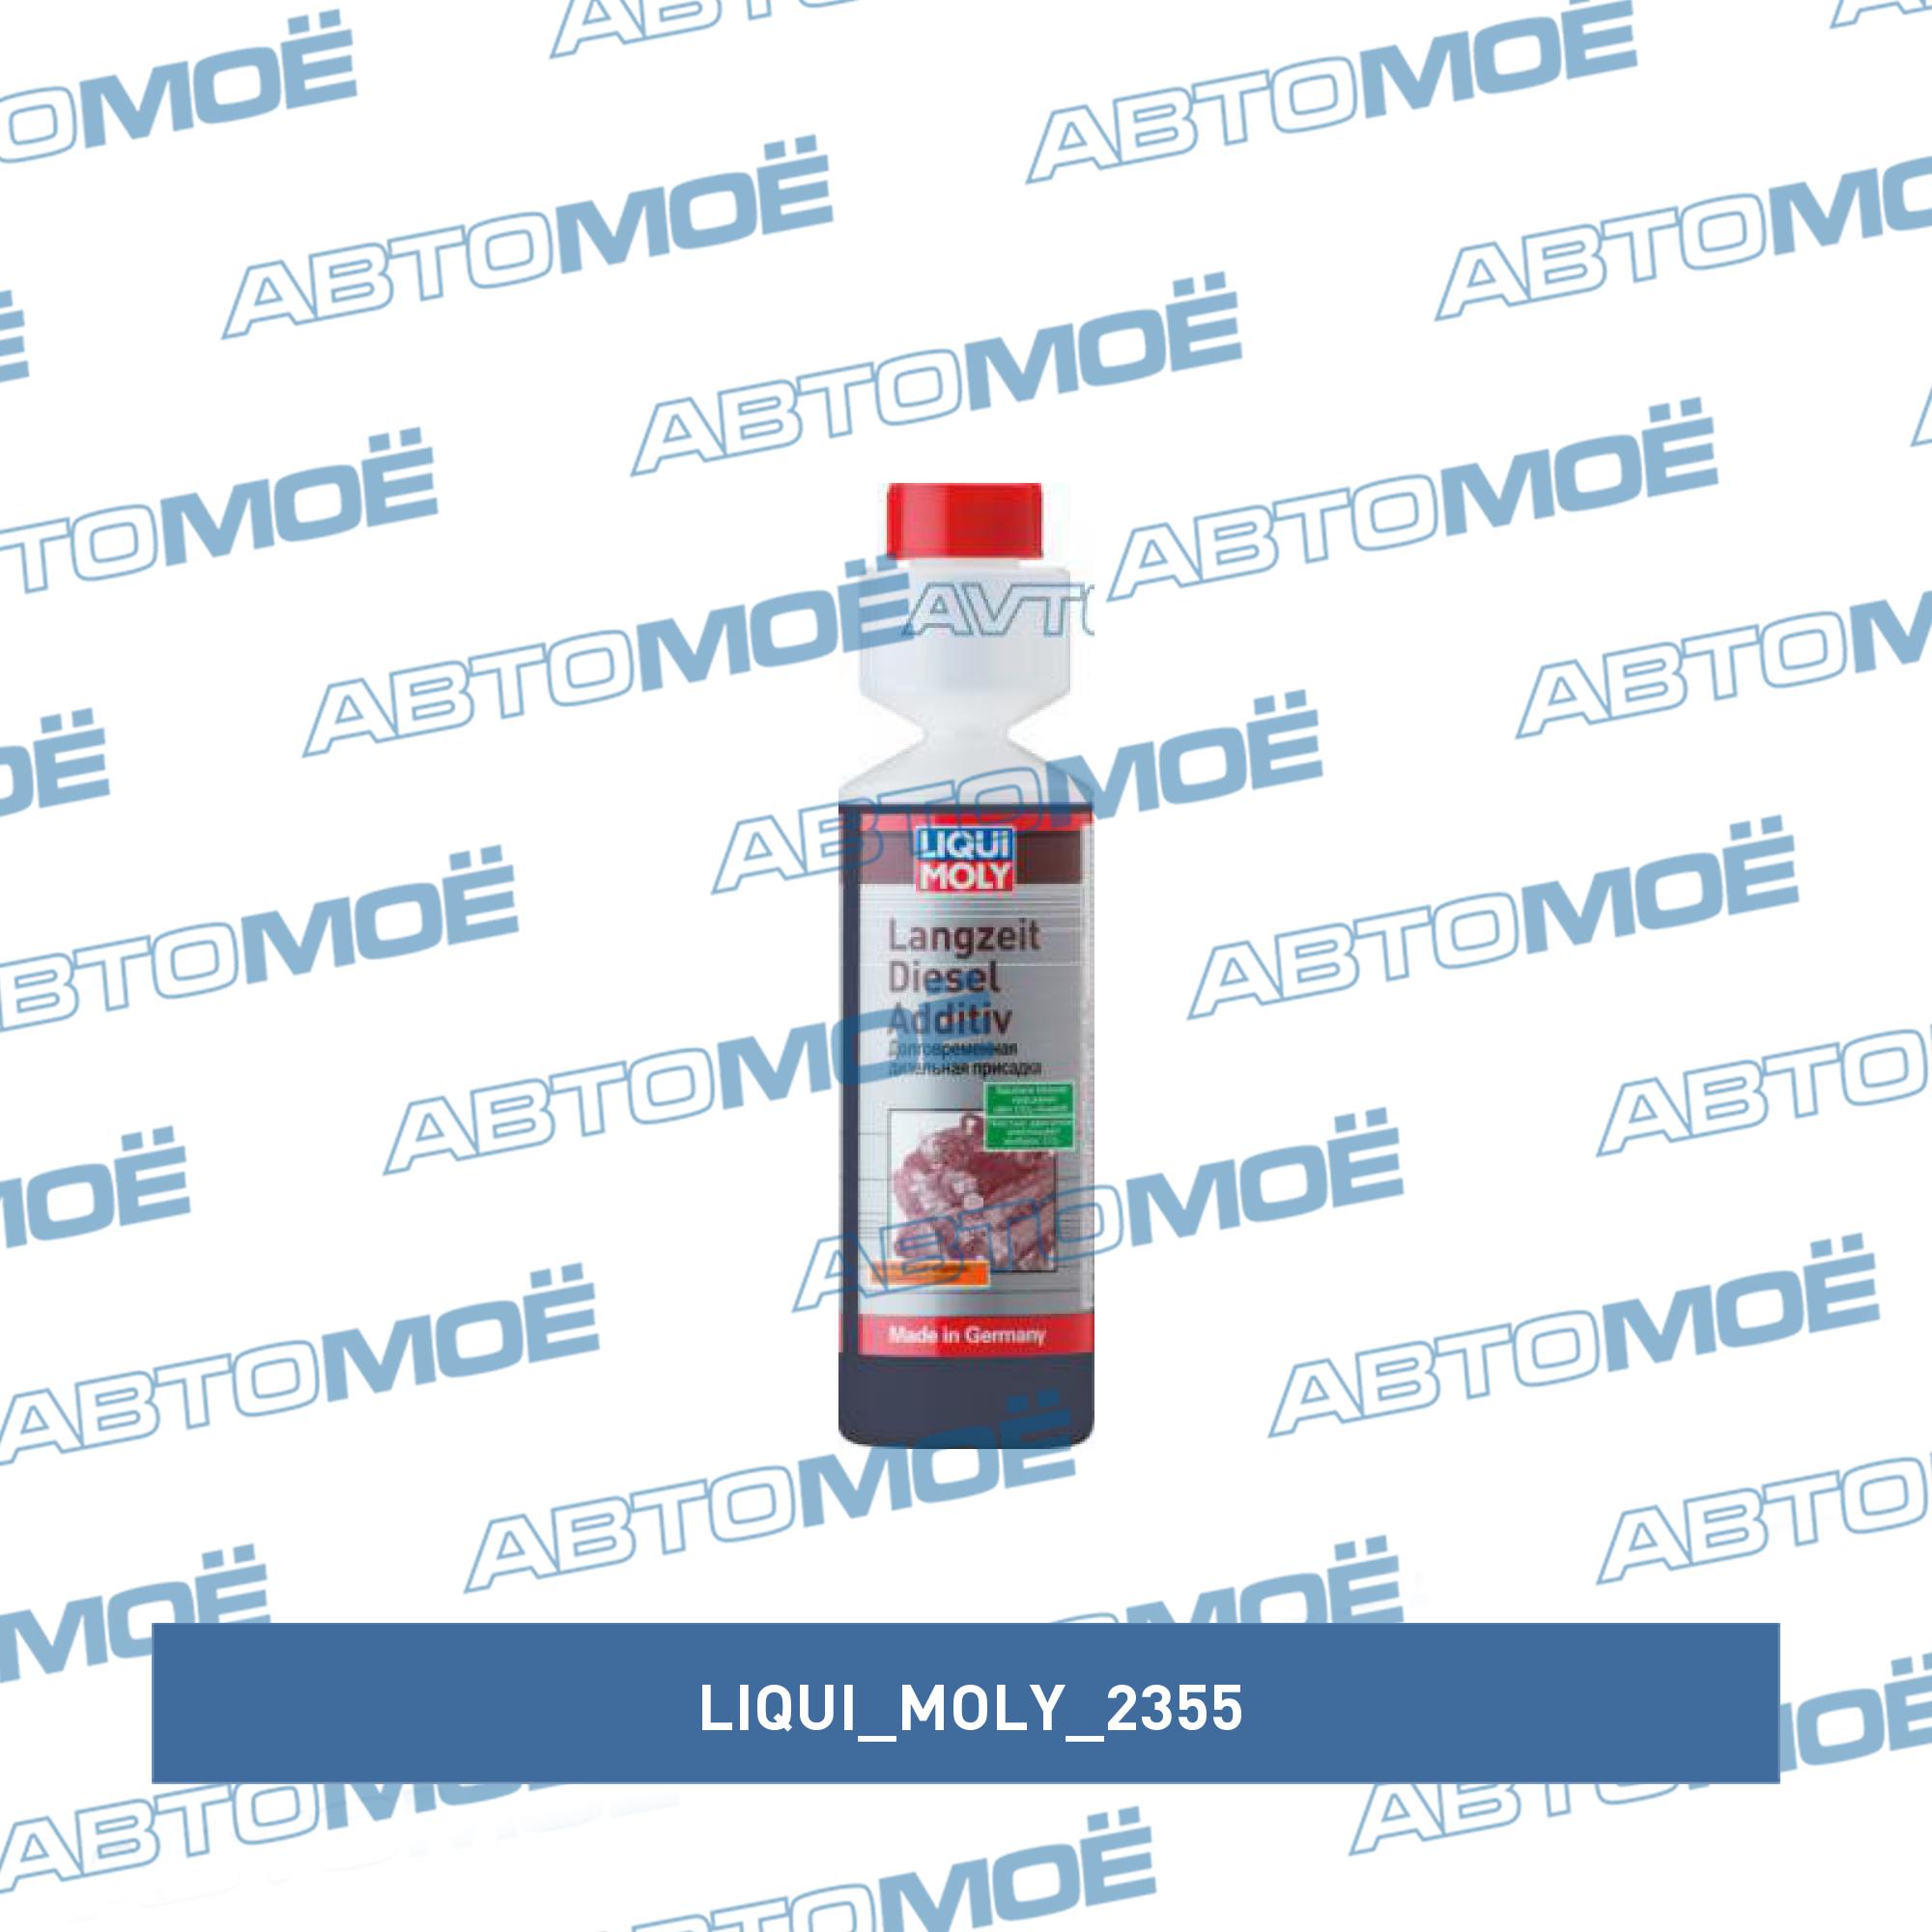 Долговременная дизельная присадка Langzeit Diesel Additiv 250мл (LIQUI MOLY) LIQUI MOLY 2355